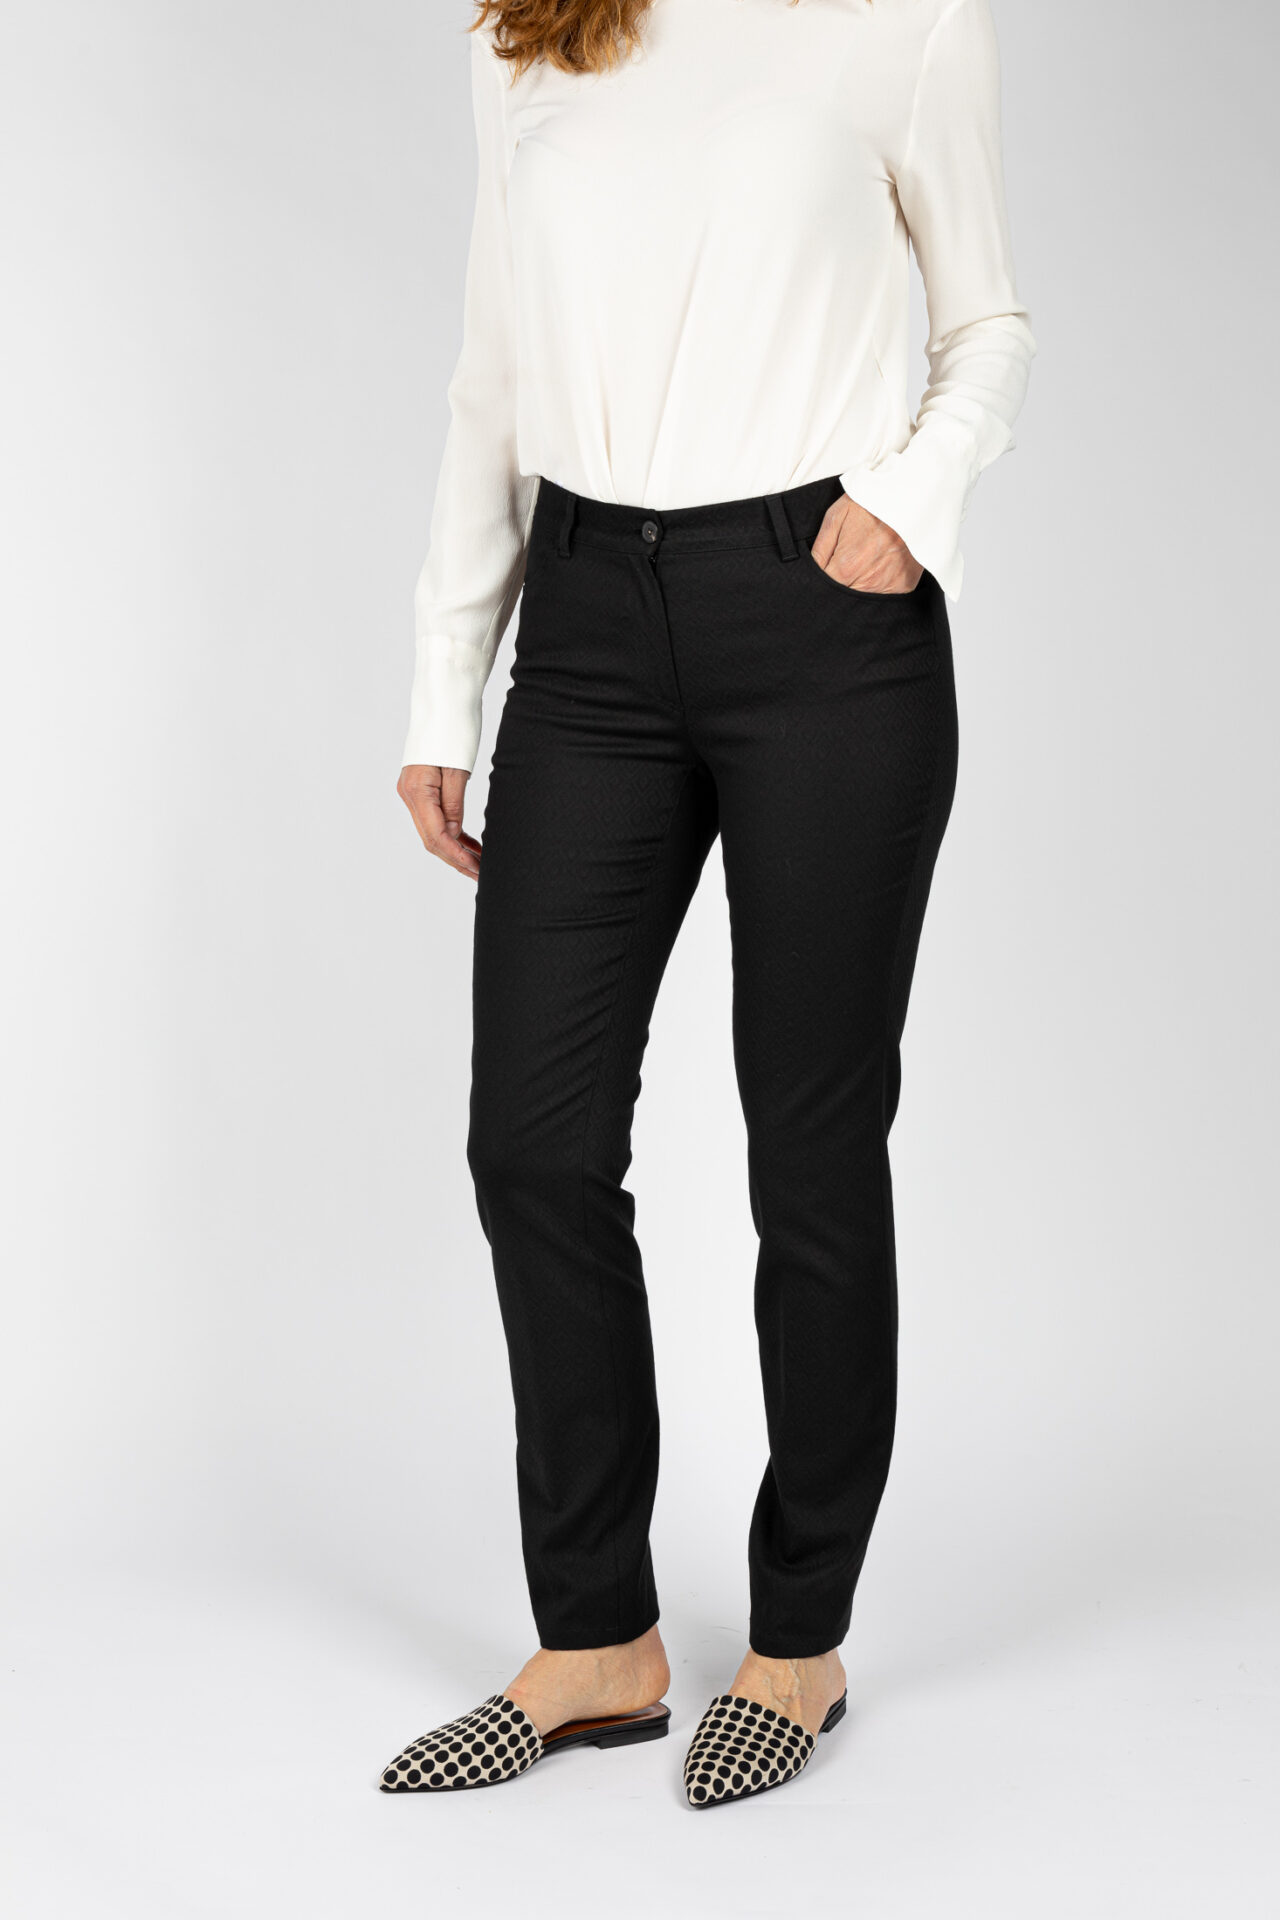 Pantaloni modello Jeans gamba regolare colore nero da donna P19630T57 - 3